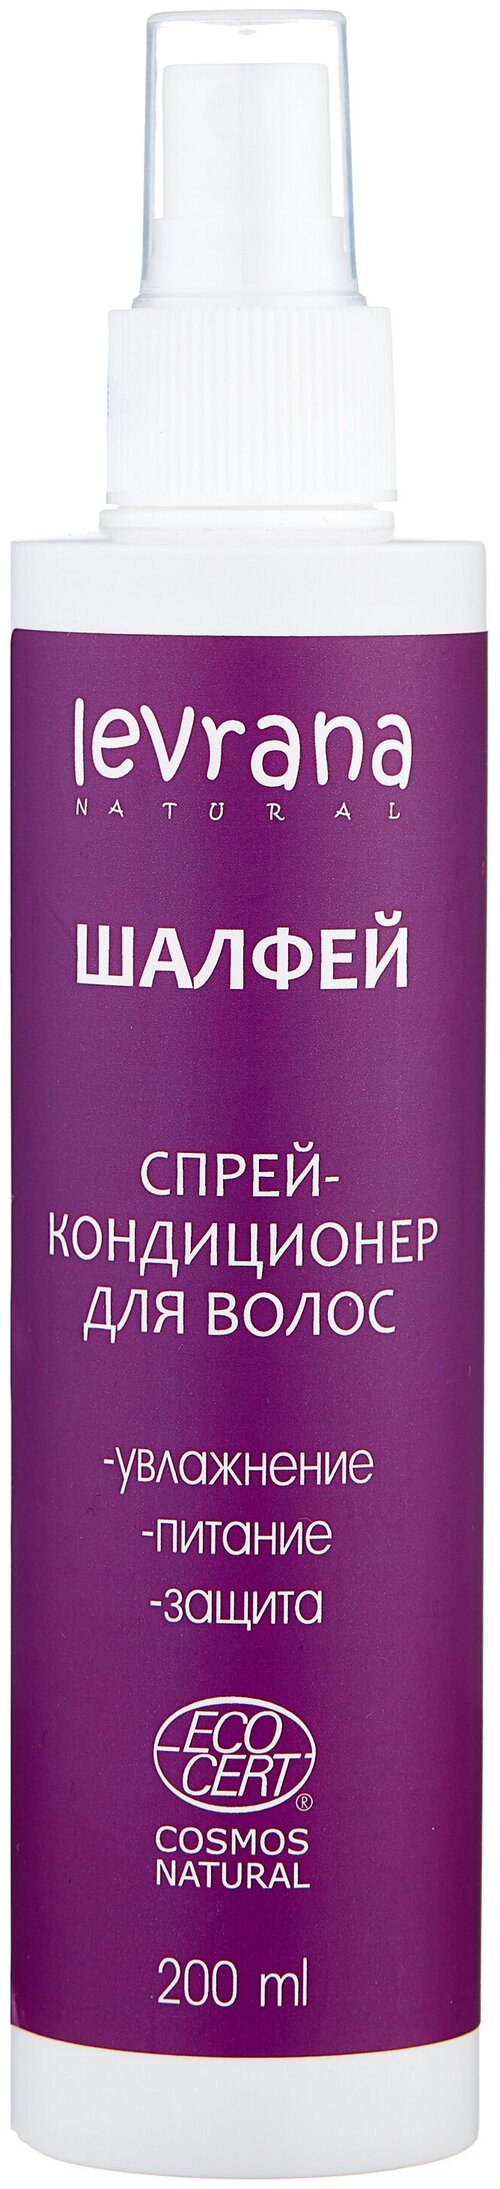 Levrana несмываемый спрей-кондиционер для волос Шалфей, 200 мл